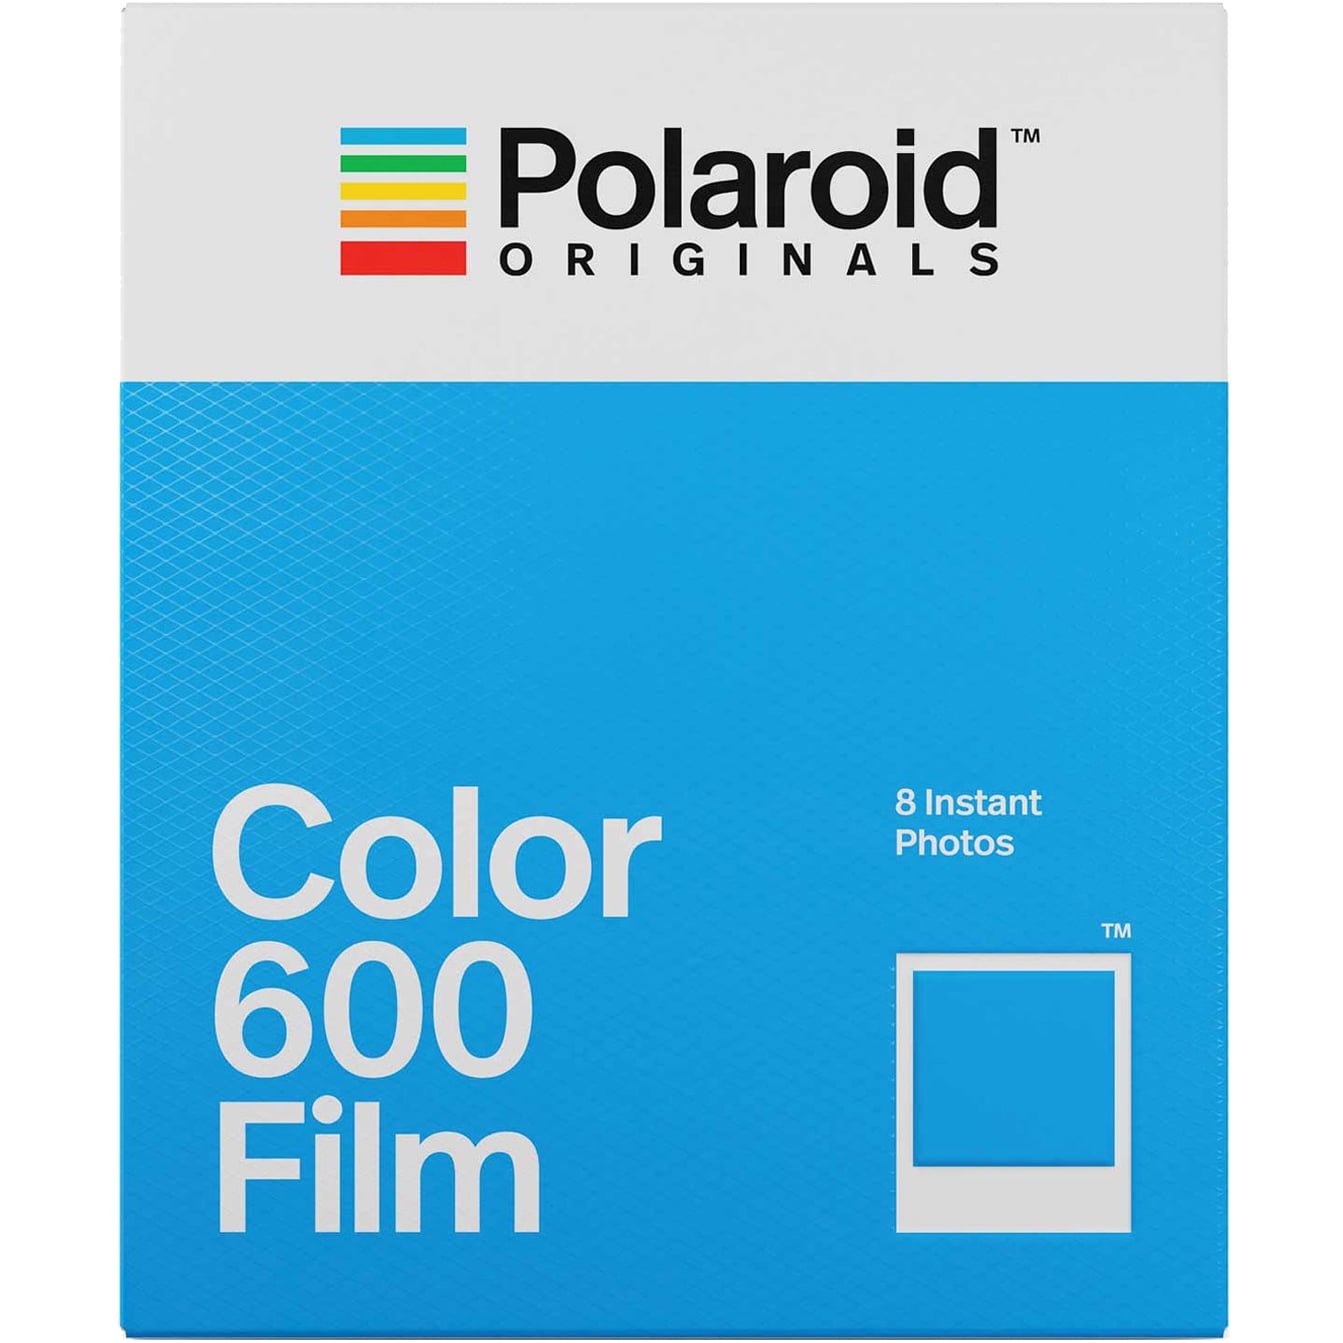 Comprar Polaroid 1x2 Originals 600 Instant Film color al mejor precio